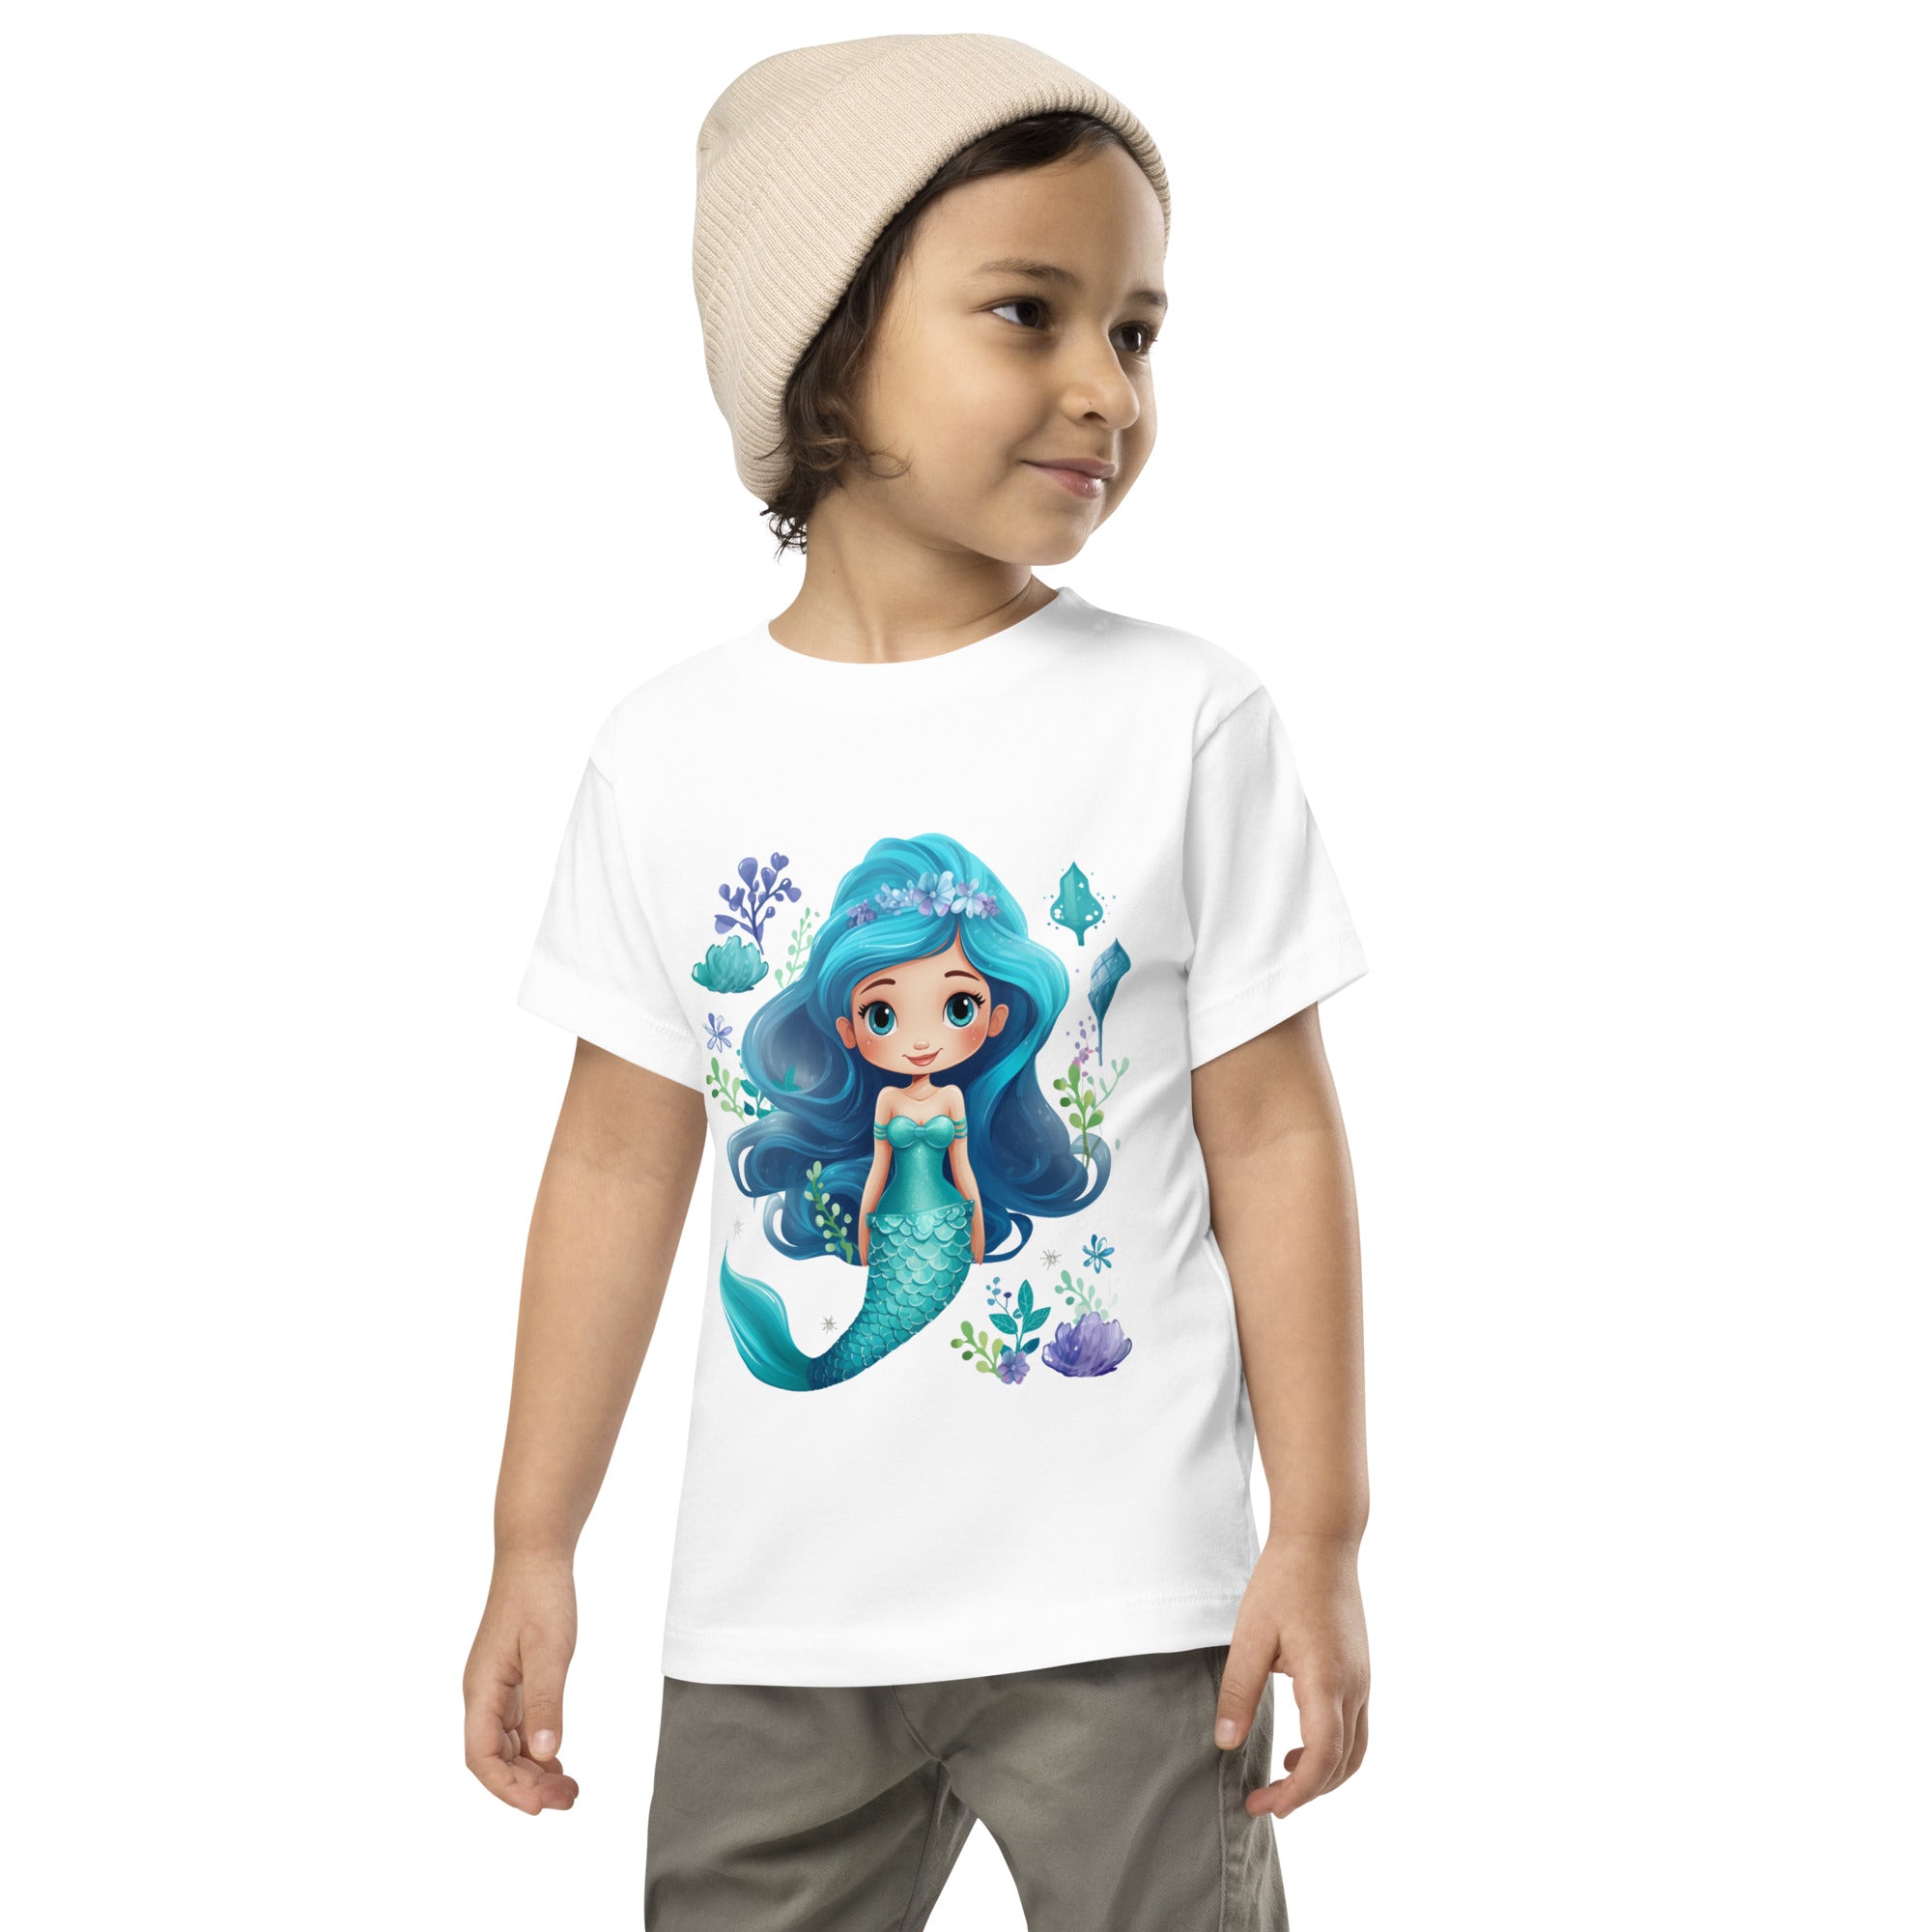 Toddler Short Sleeve Tee- Cute Mermaid